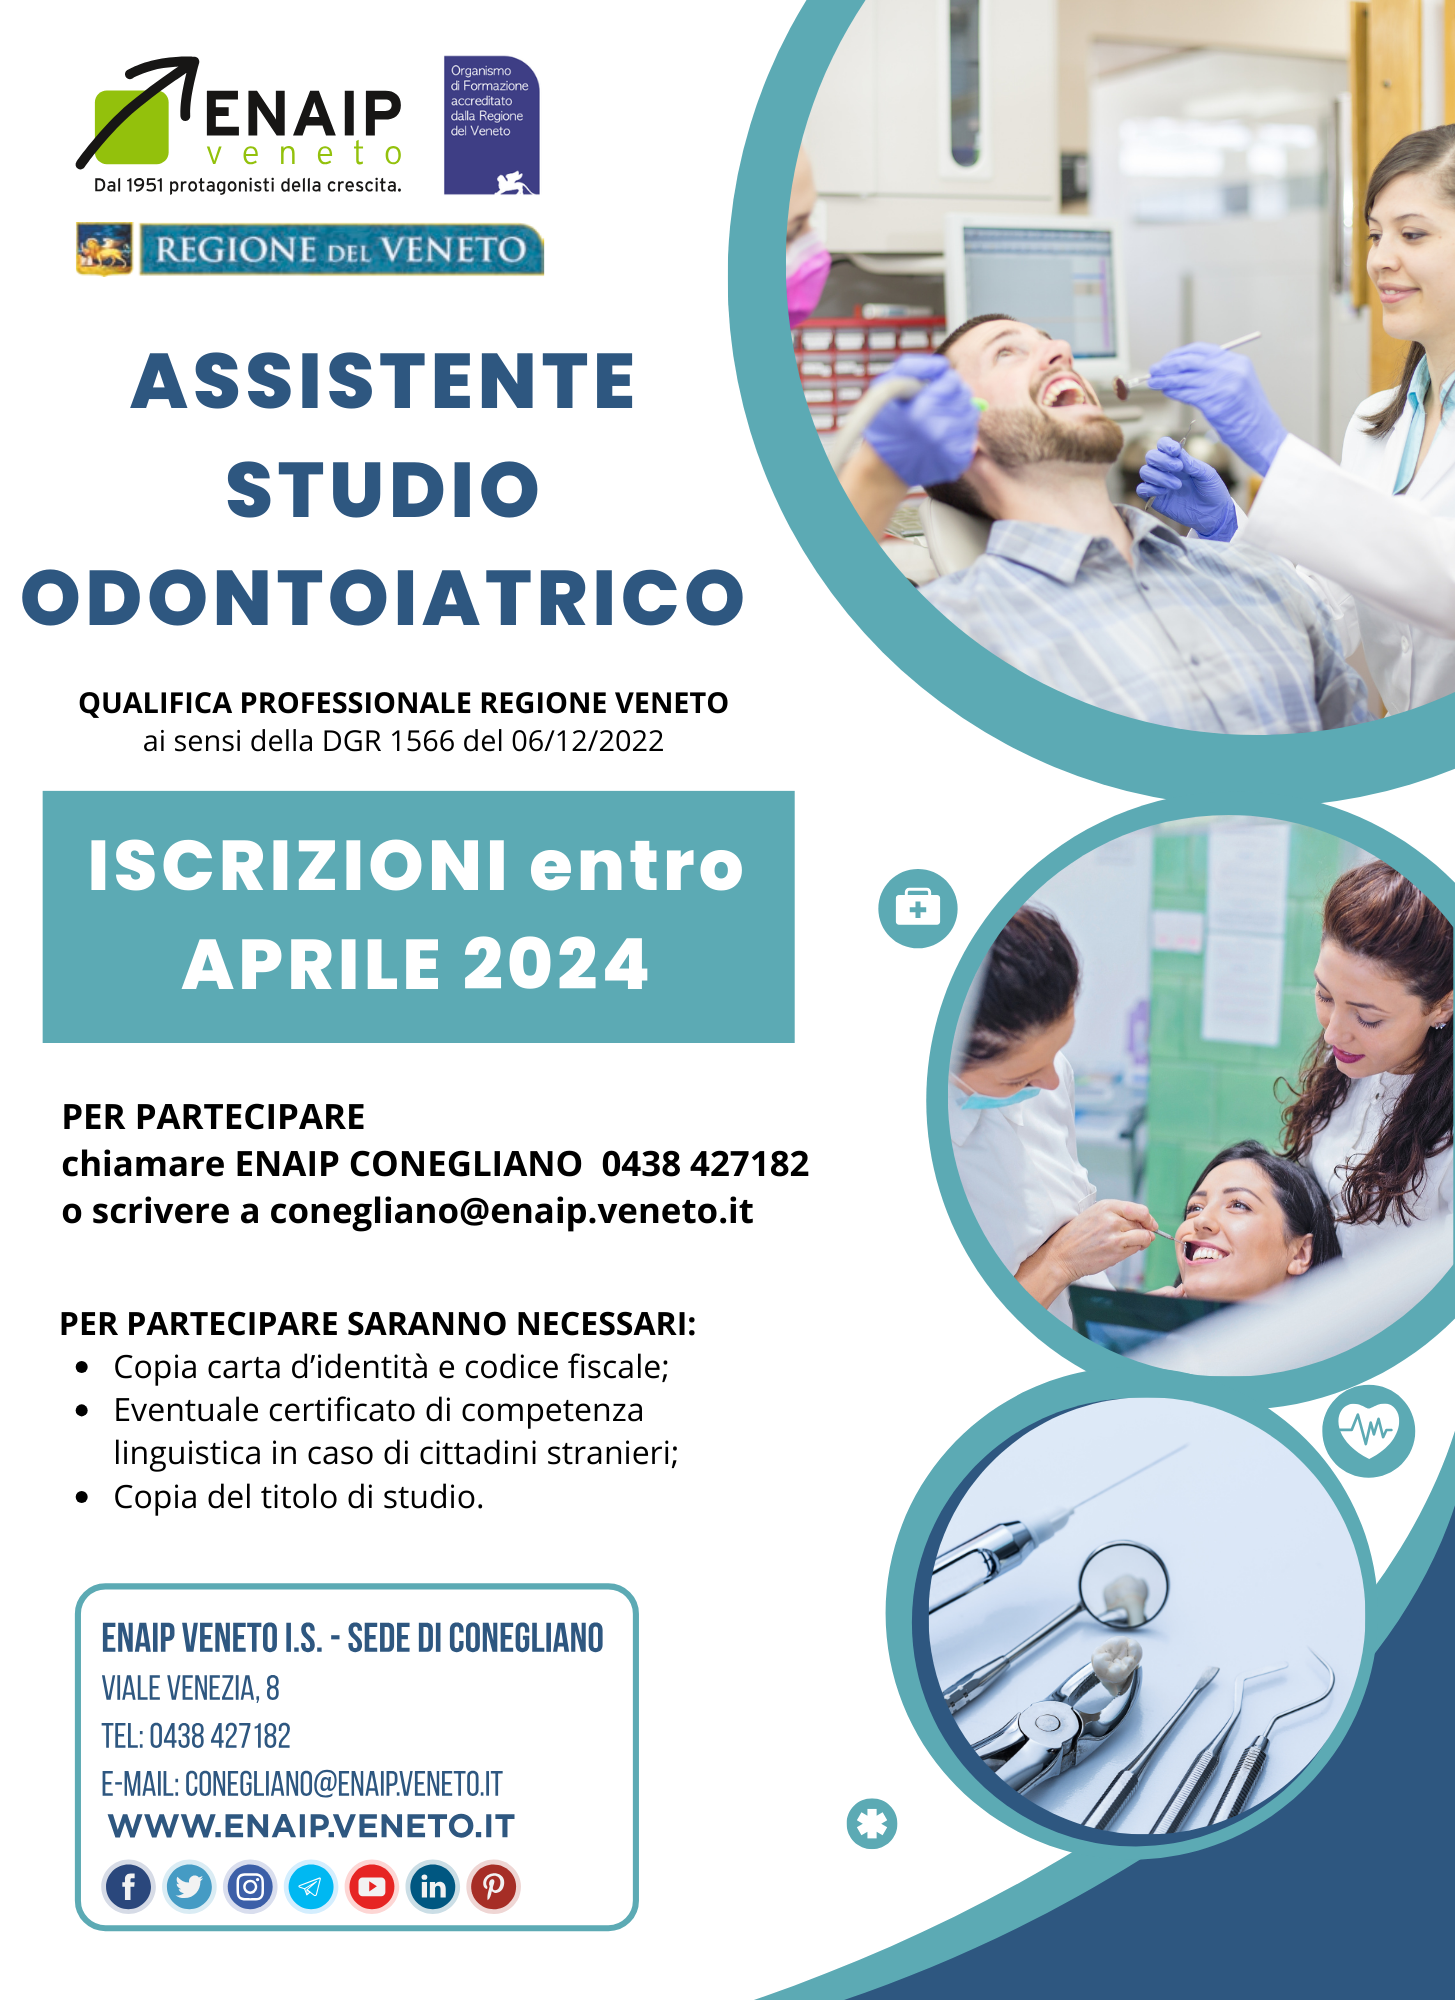 Corso Assistente Studio Odontoiatrico - Enaip Veneto